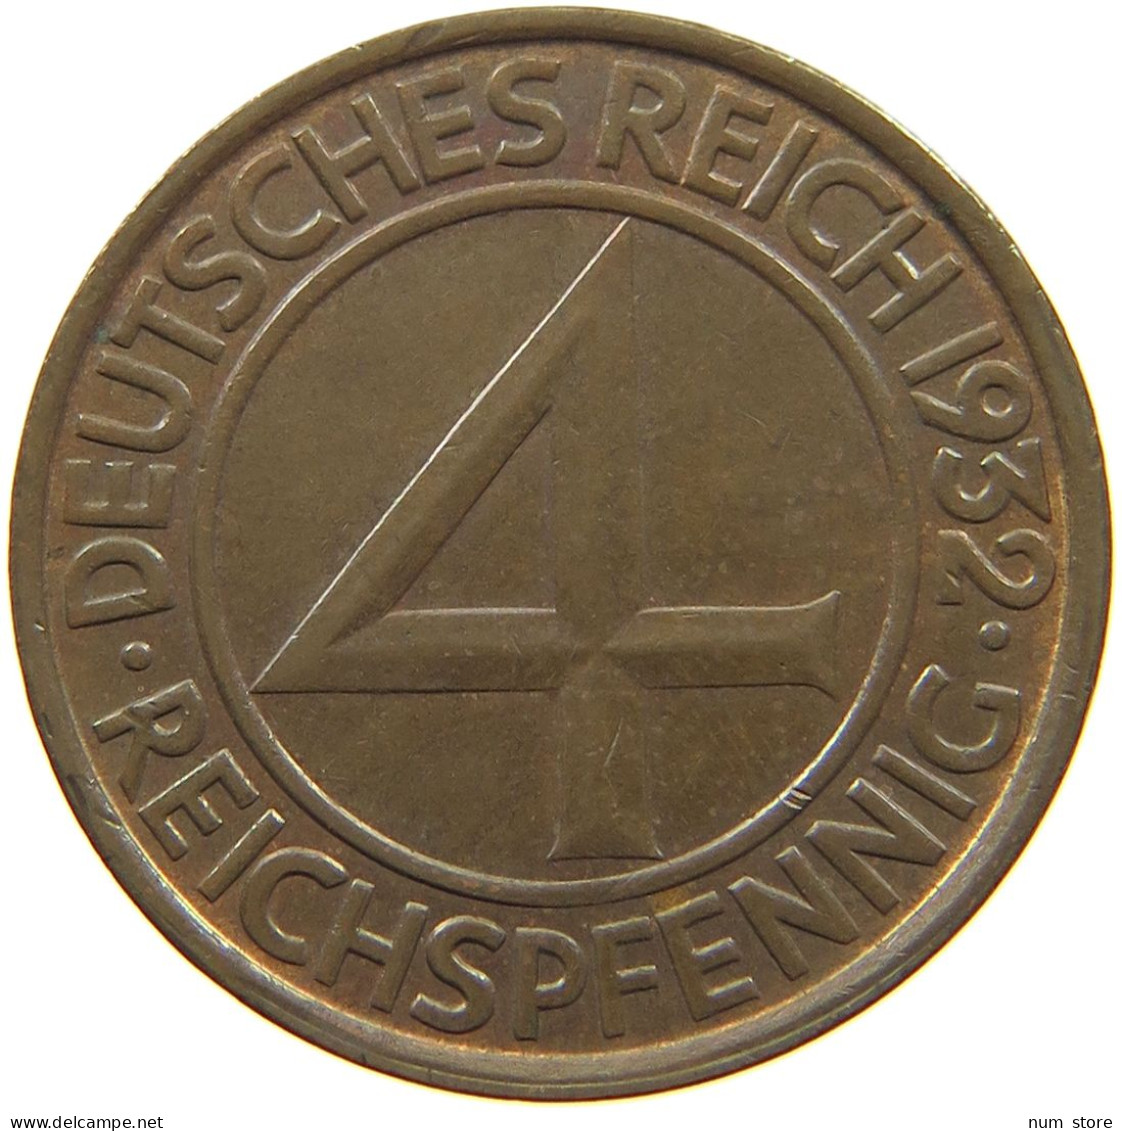 WEIMARER REPUBLIK 4 PFENNIG 1932 G WEIMARER REPUBLIK: J.315, 4 REICHSPFENNIG 1932 G #MA 000296 - 4 Reichspfennig